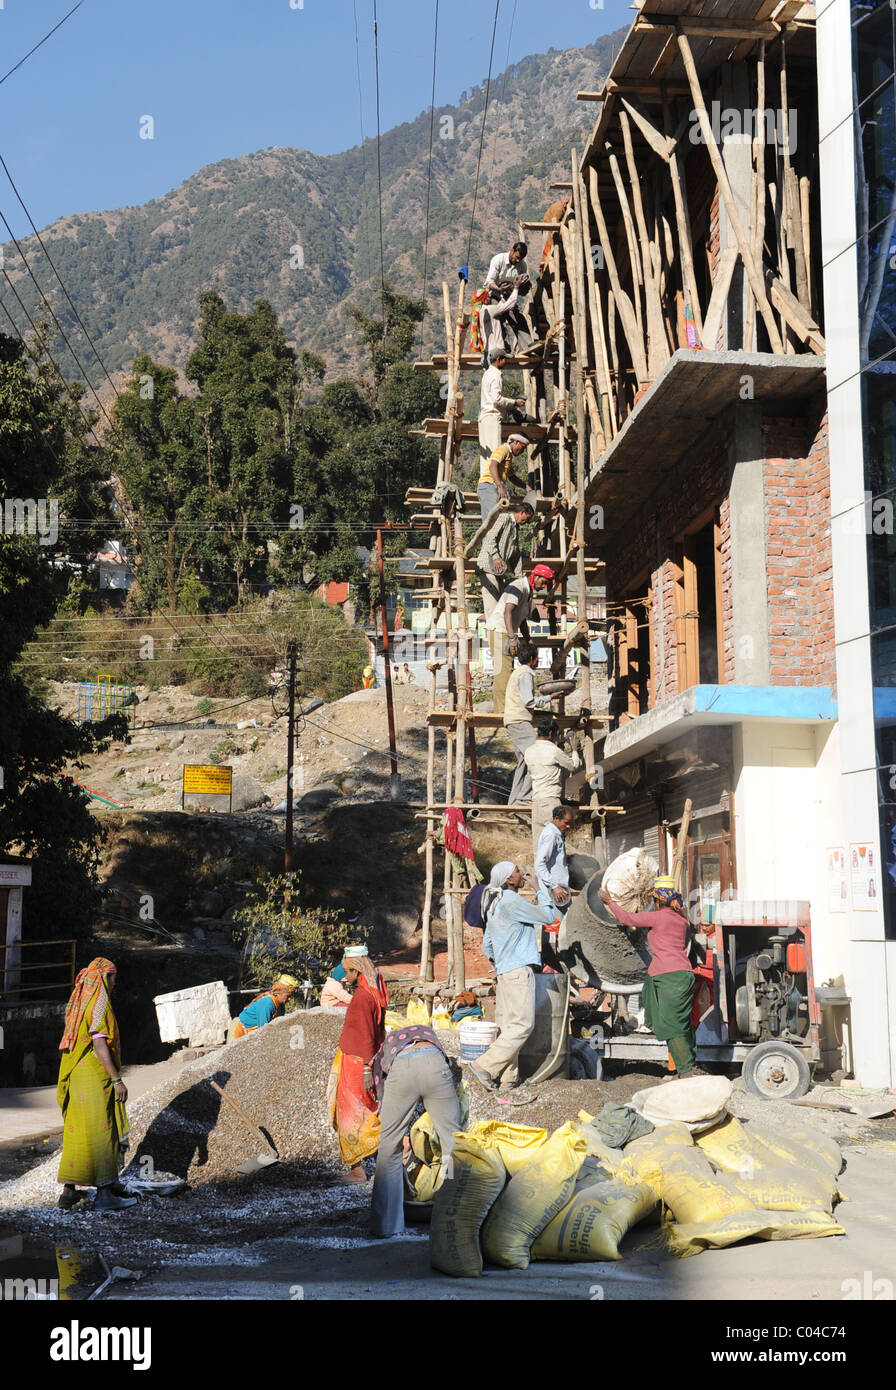 Site de construction dans la région de McLeod Gange, Inde Banque D'Images